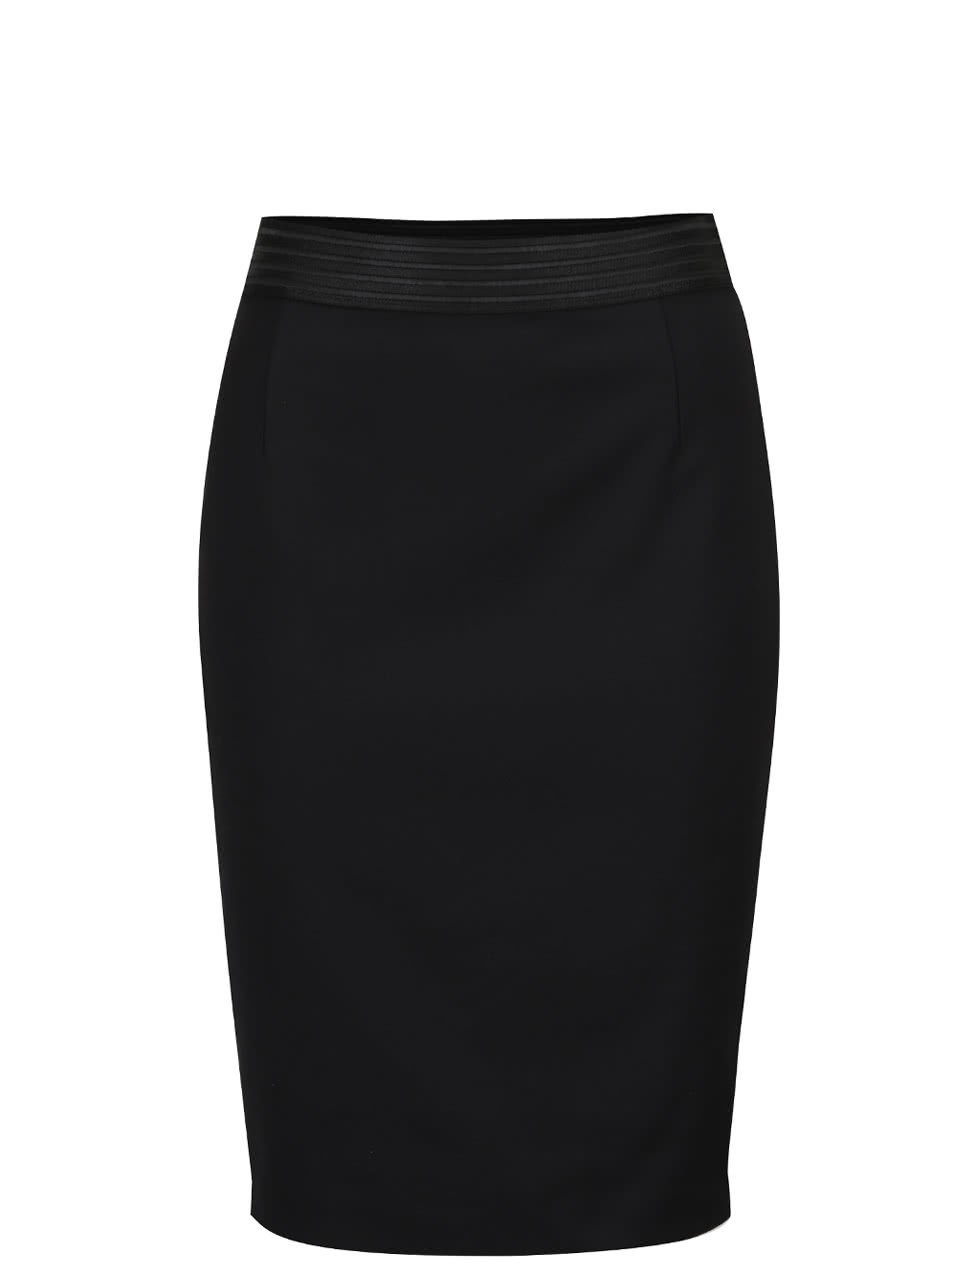 Černá sukně s výraznou gumou v pase French Connection glass